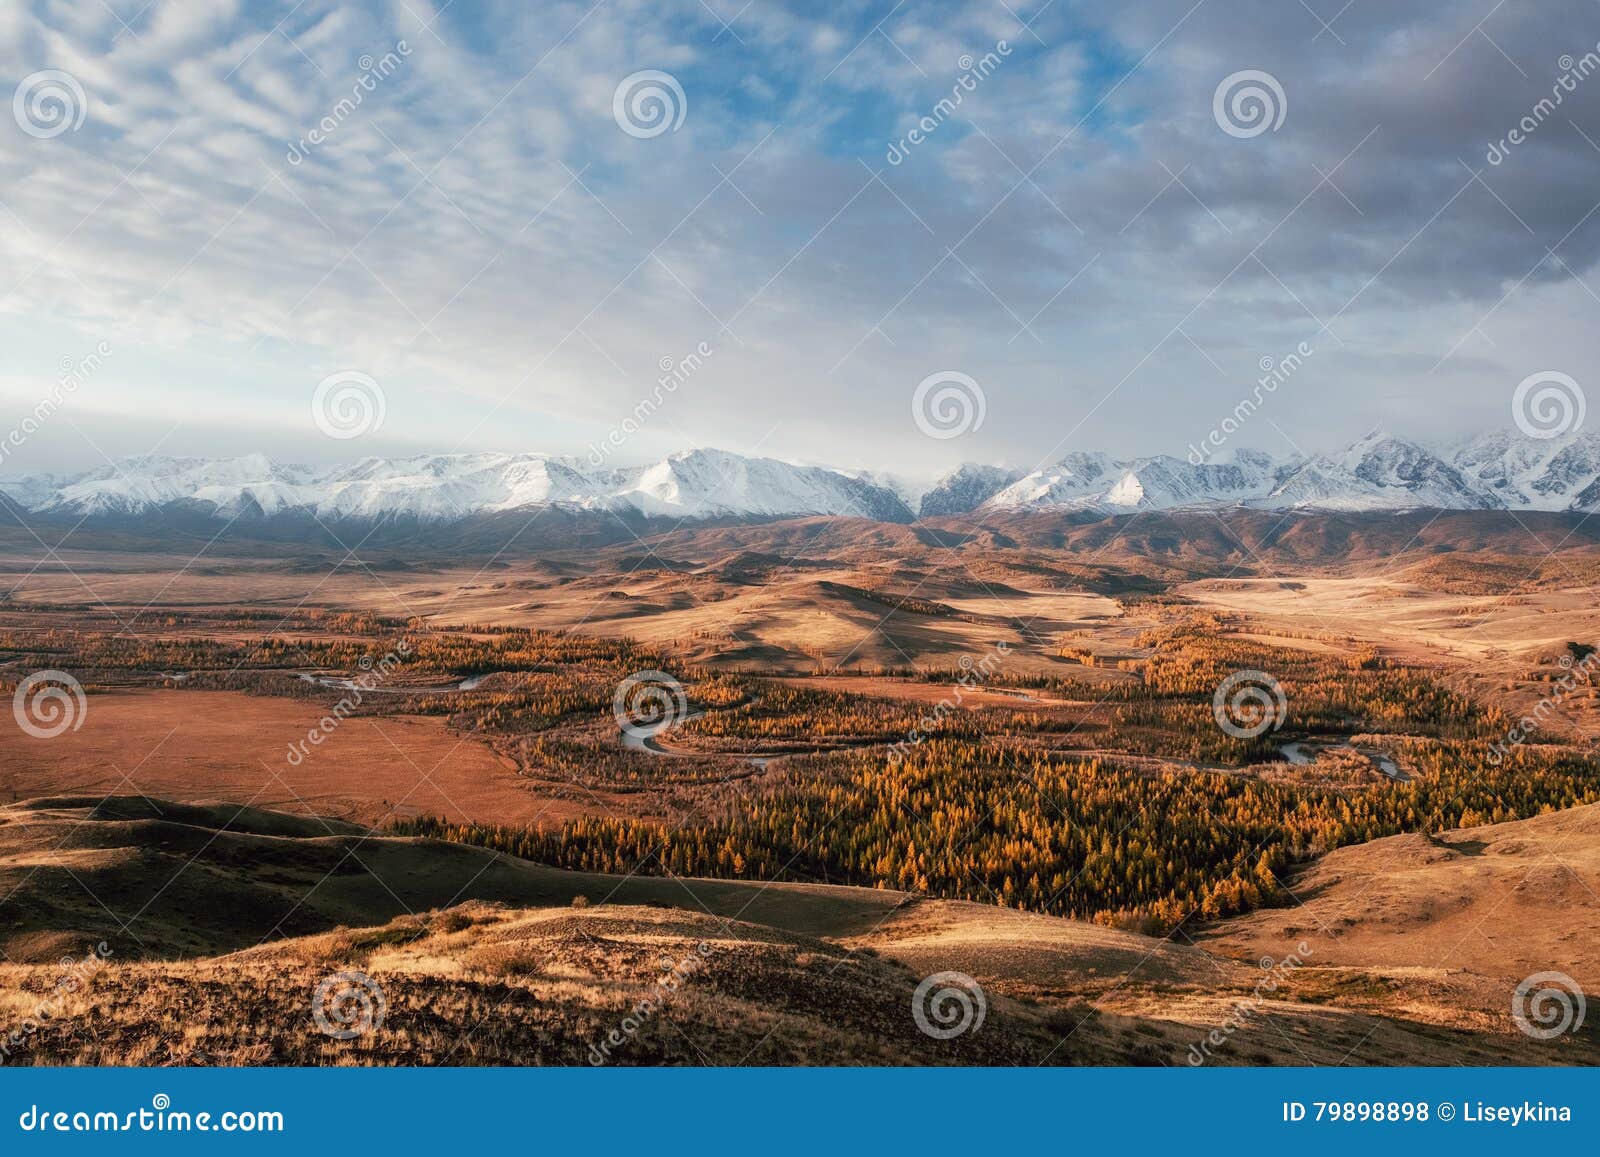 altay landscape. russia.